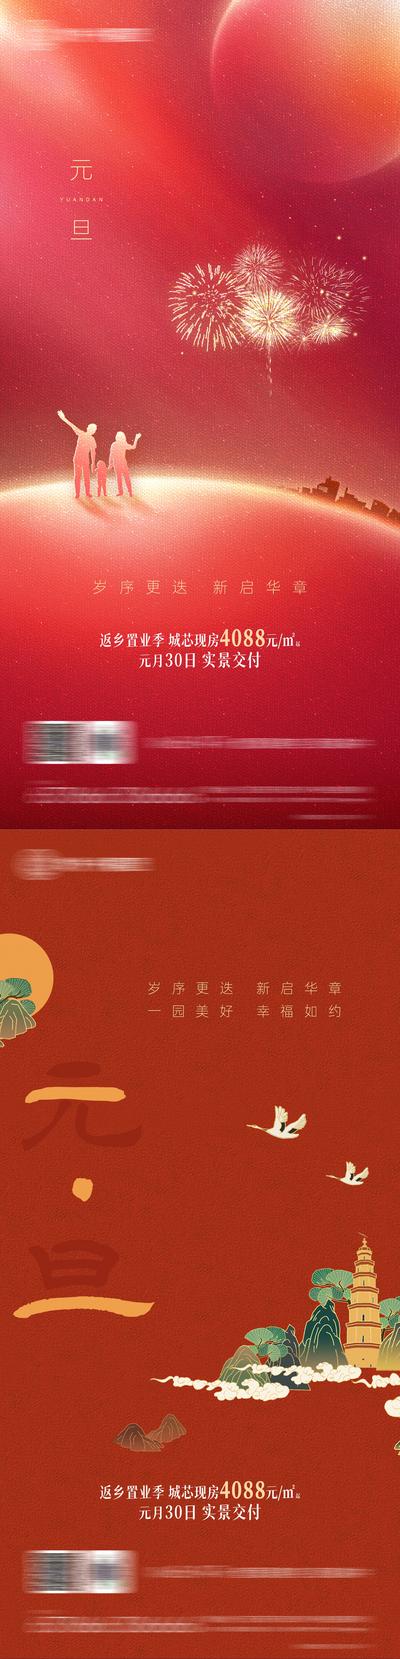 南门网 海报  房地产   系列   元旦  公历节日  喜庆   跨年  烟花 